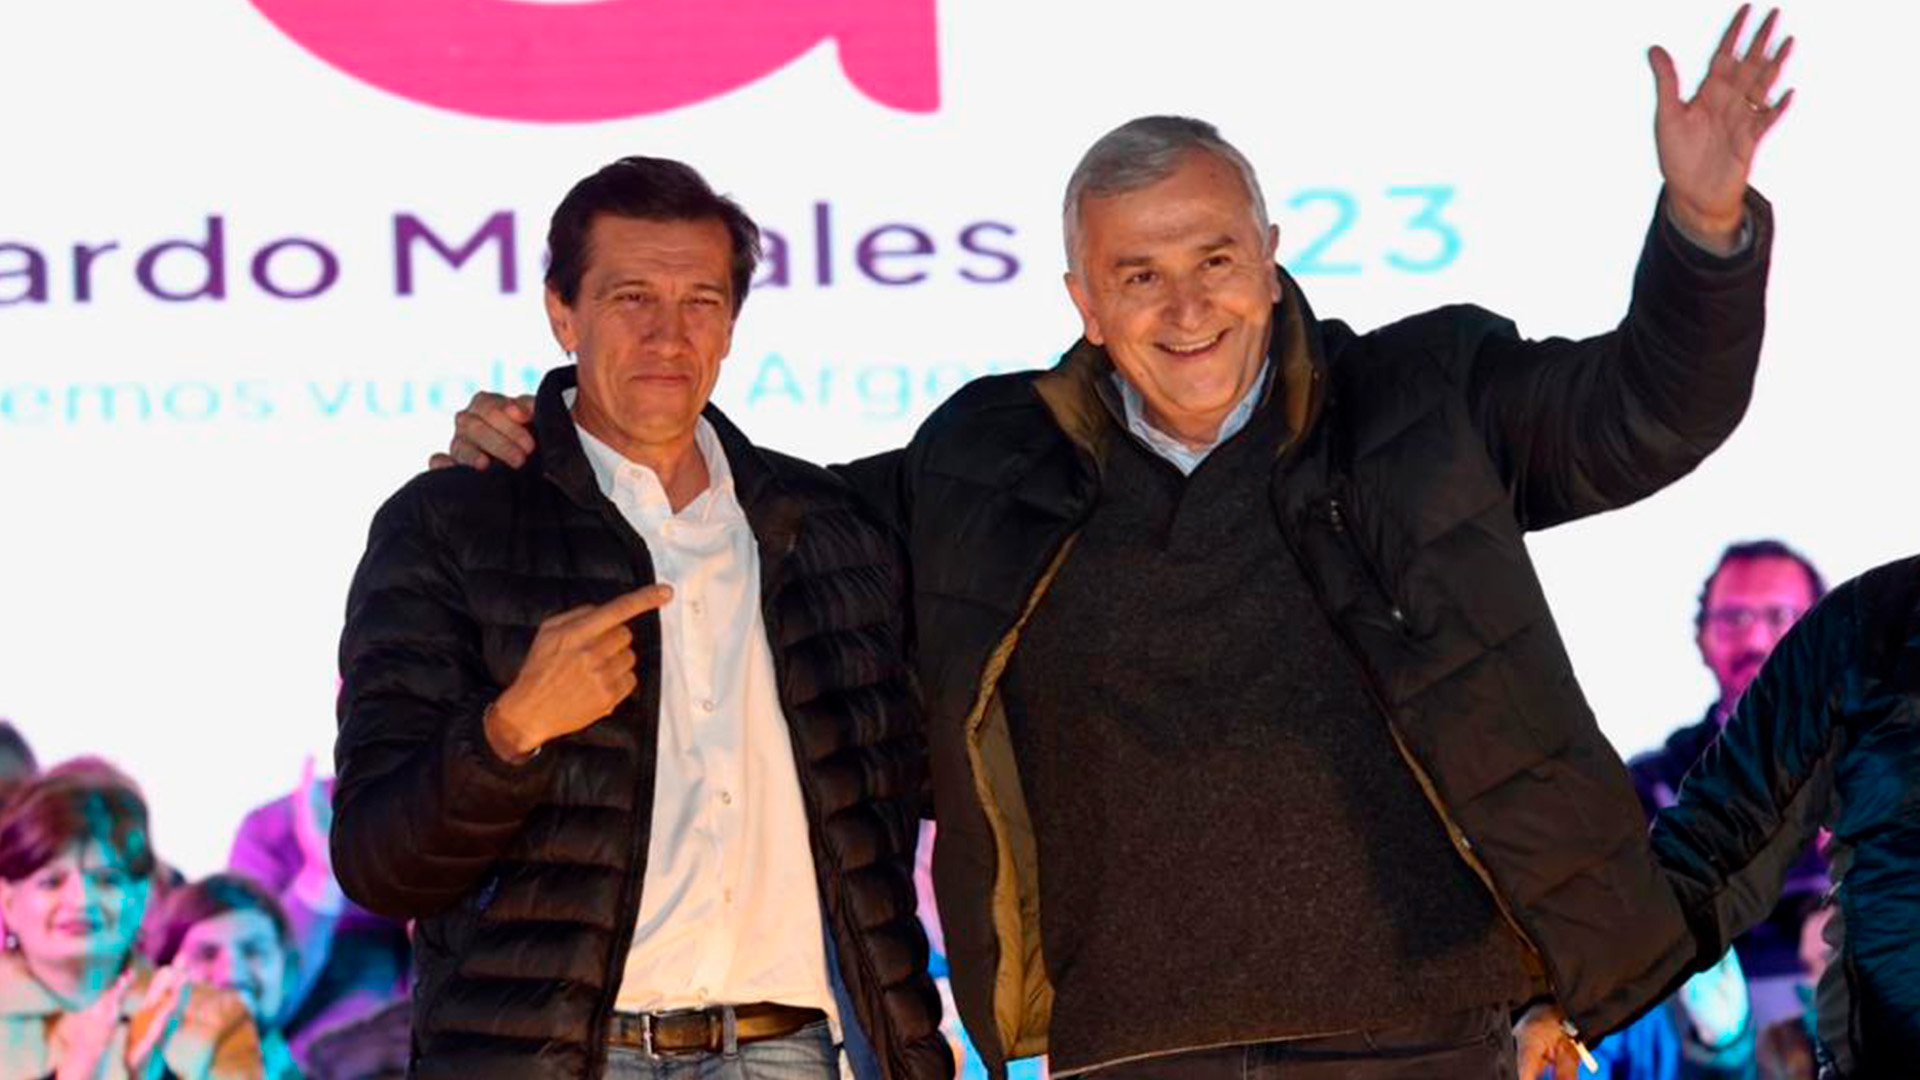 Gerardo Morales junto a Carlos Sadir, el candidato que impulsa para la gobernación de Jujuy